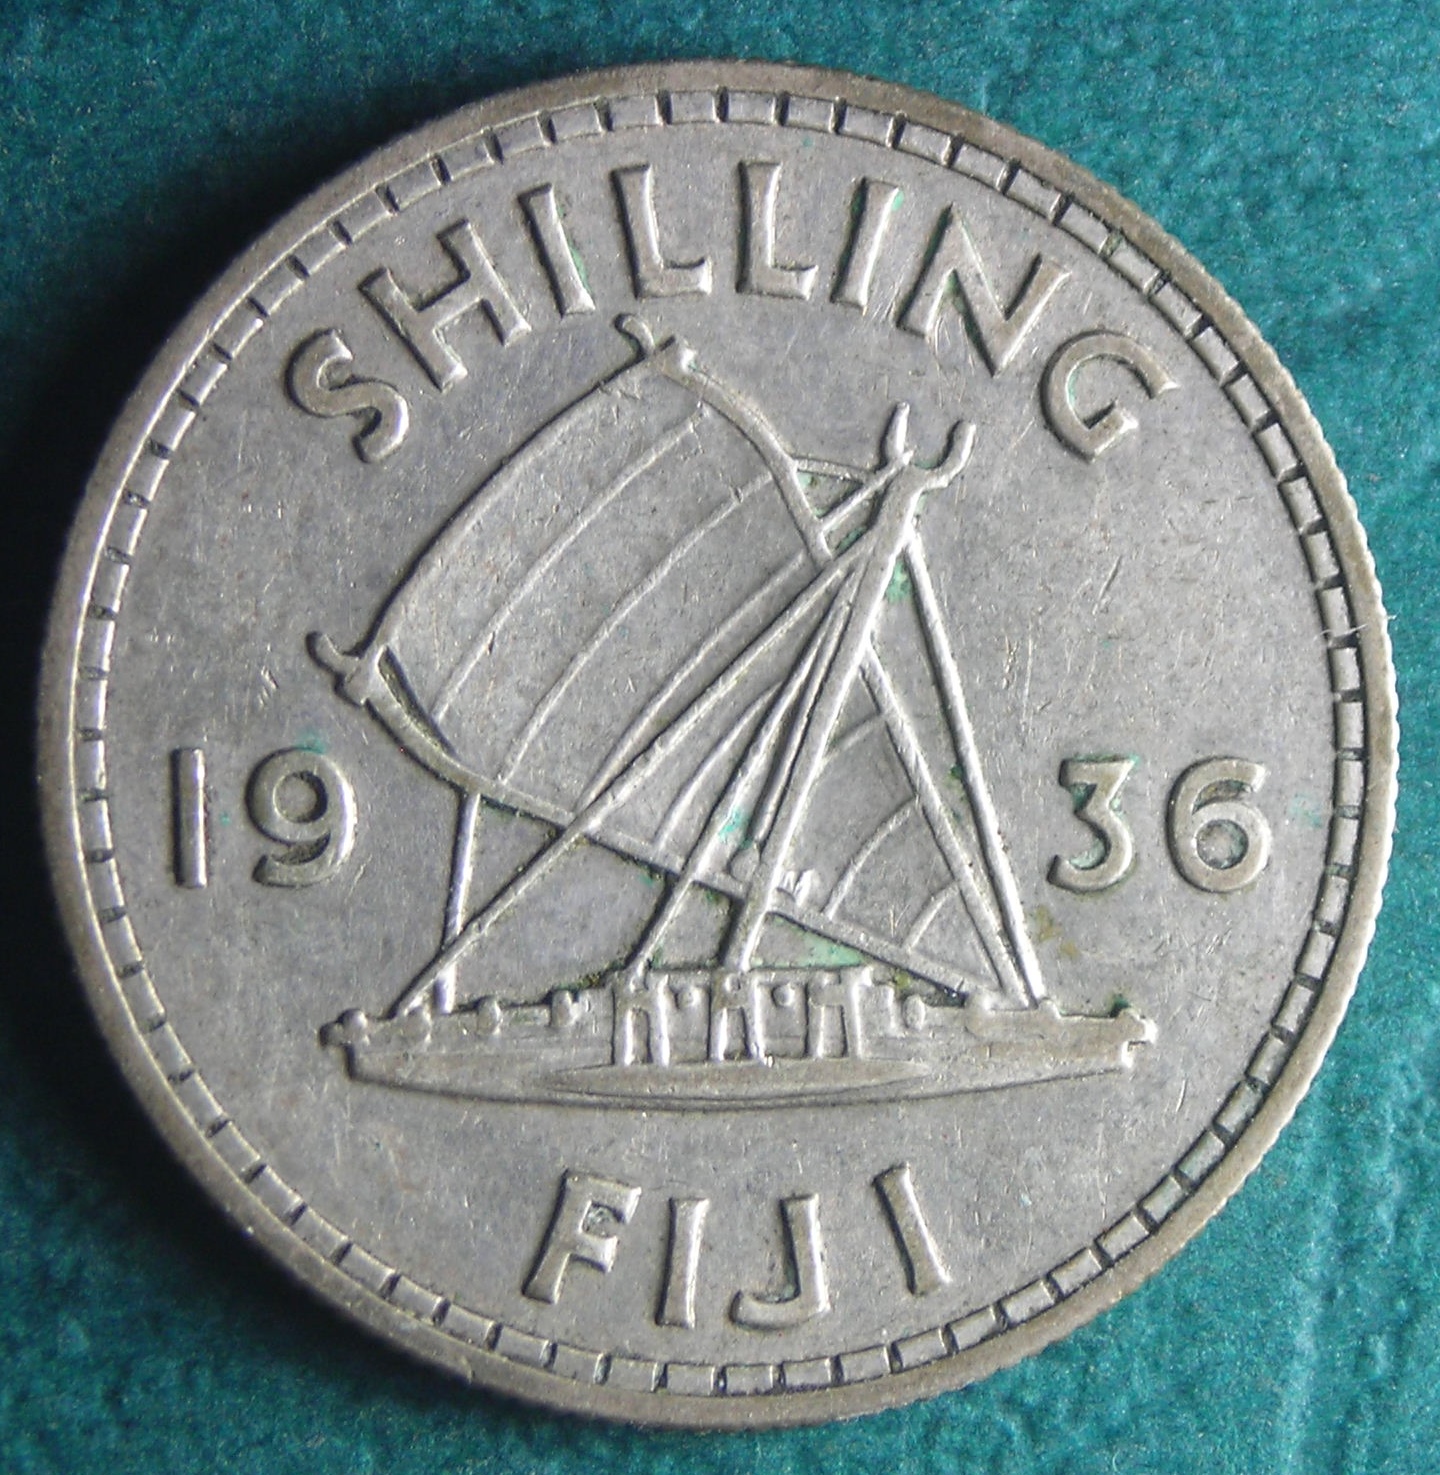 1936 Fiji shilling rev.JPG